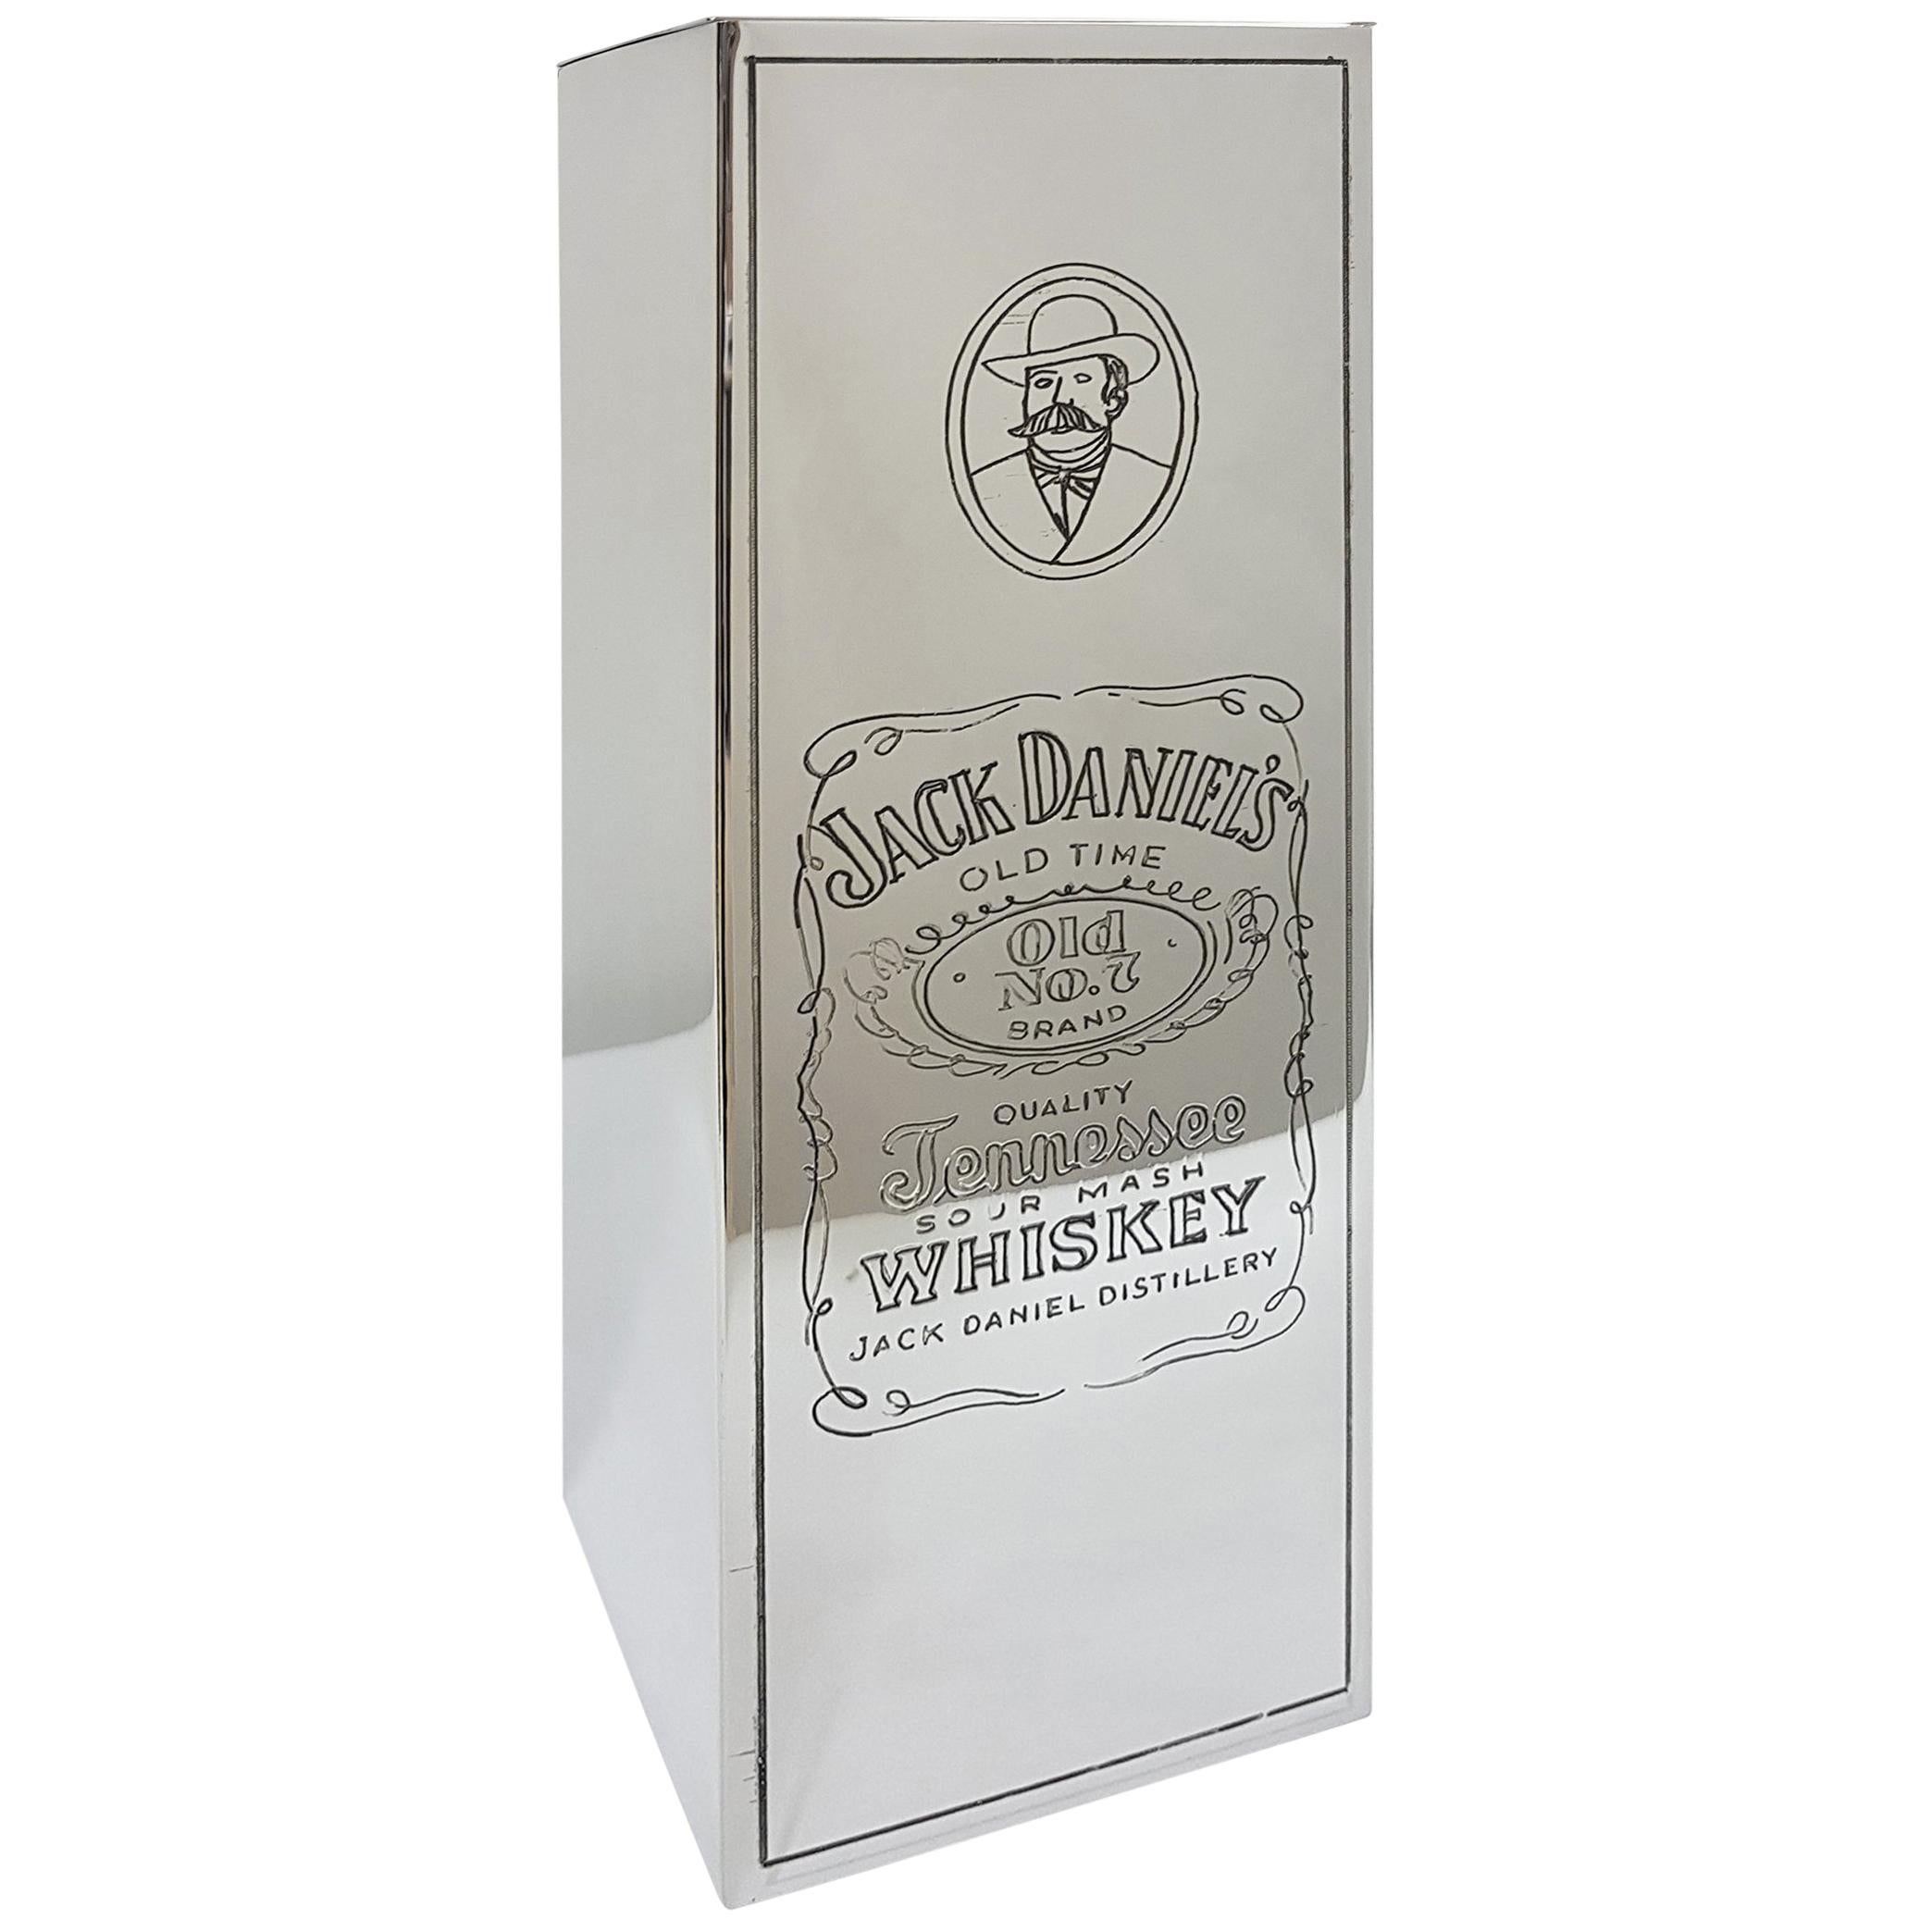 20th Century Italian Silver Engraved Whisky Bottle Holder "Jack Daniel's"